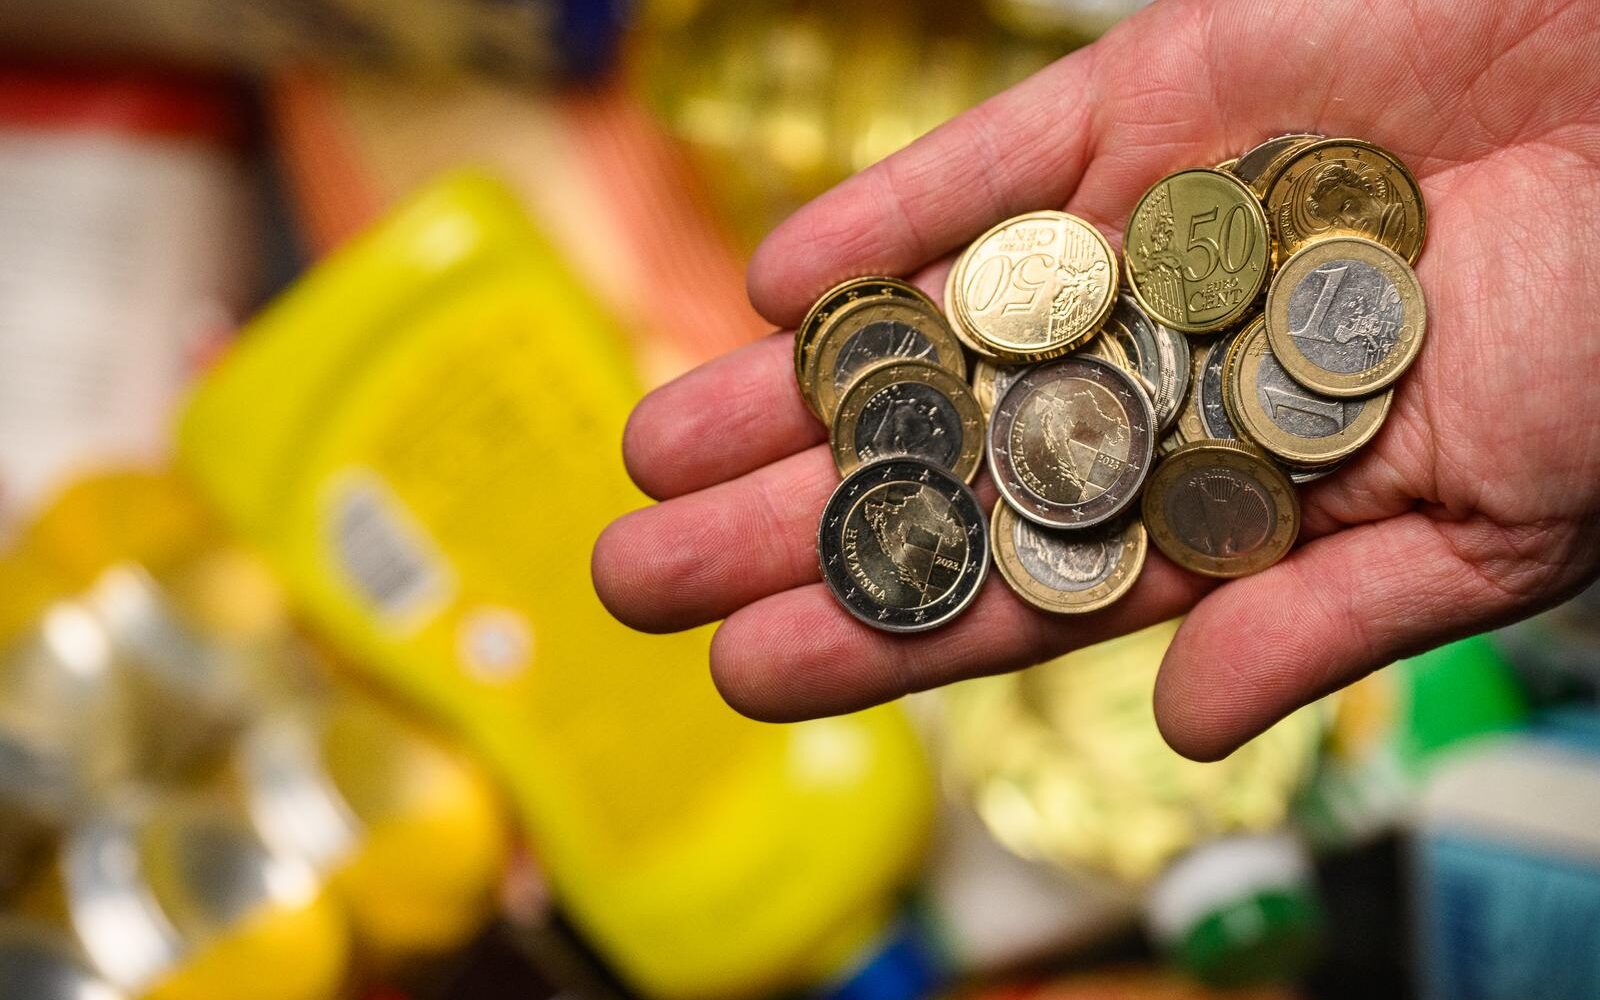 Vodeći trgovački lanci uvode 'antiinflacijsku košaricu': Trgovci kupcima nude najniže moguće cijene